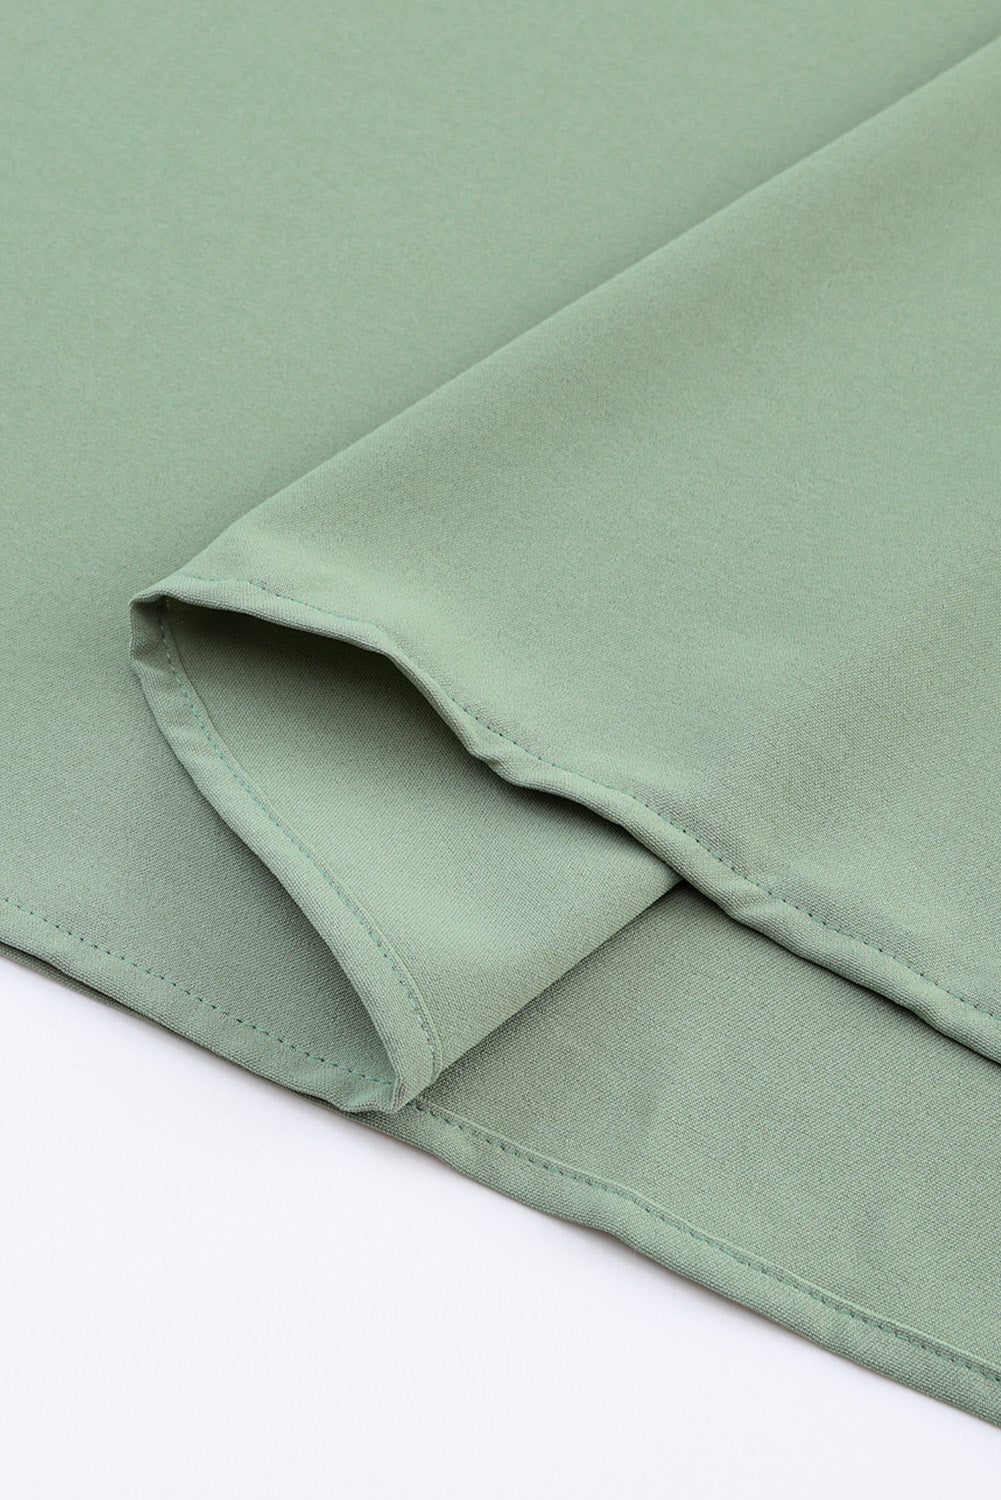 Green Roll-tab Sleeve Flowy Casual Dress